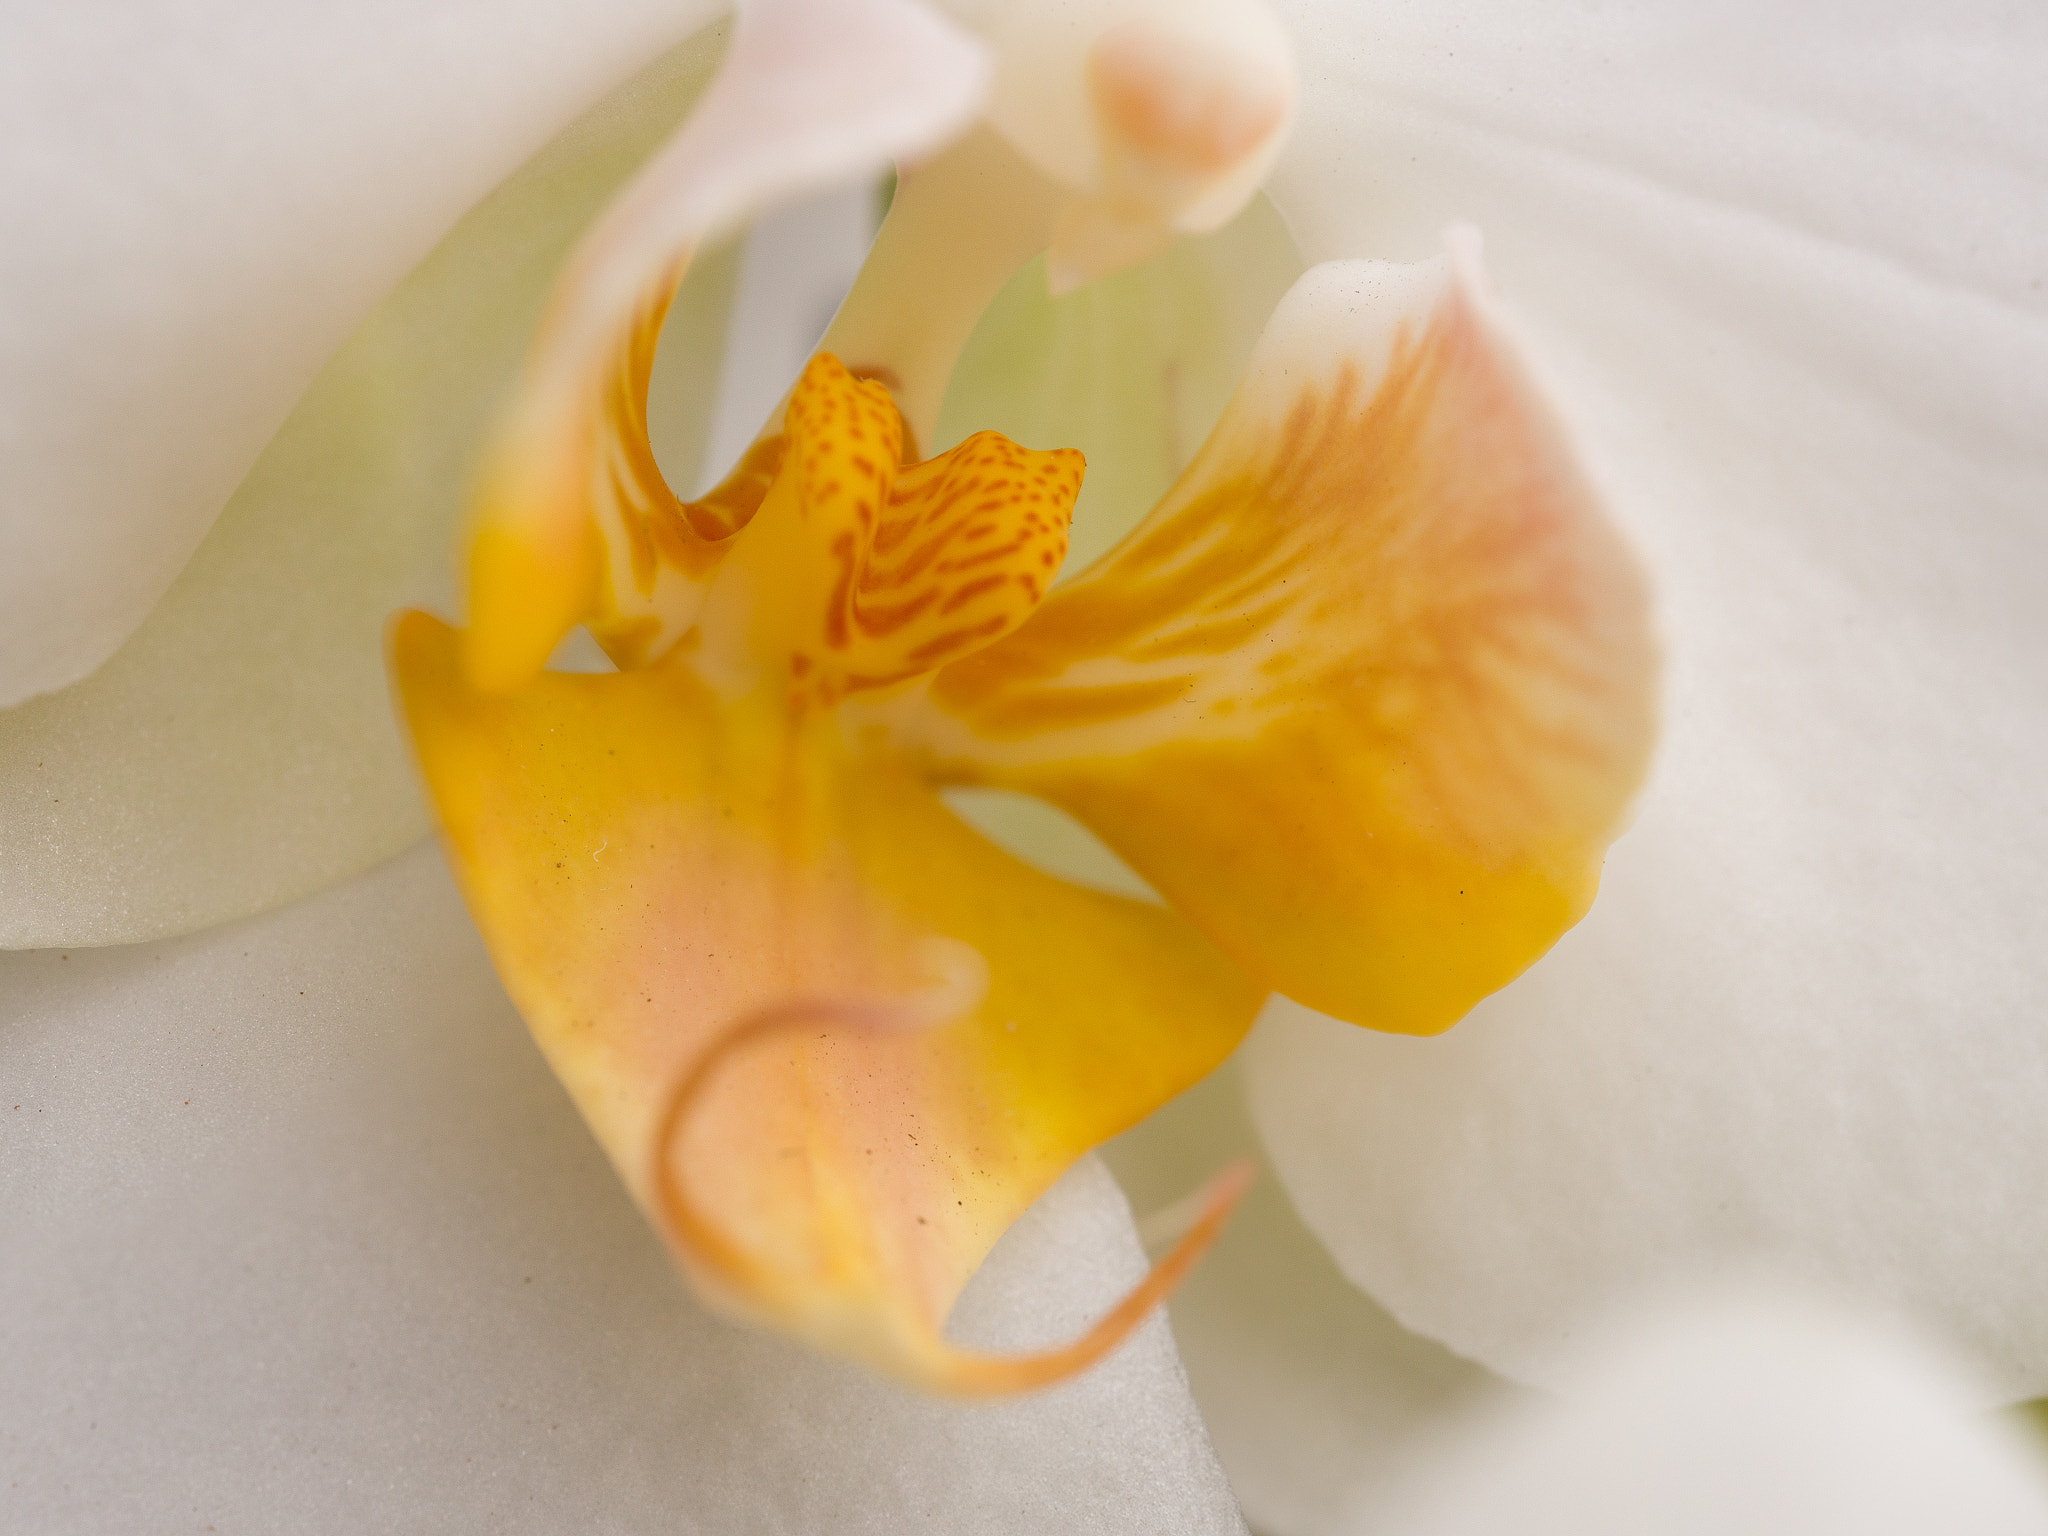 Panasonic Lumix DMC-GH4 + Olympus M.Zuiko Digital ED 60mm F2.8 Macro sample photo. Orchidaceae close up photography